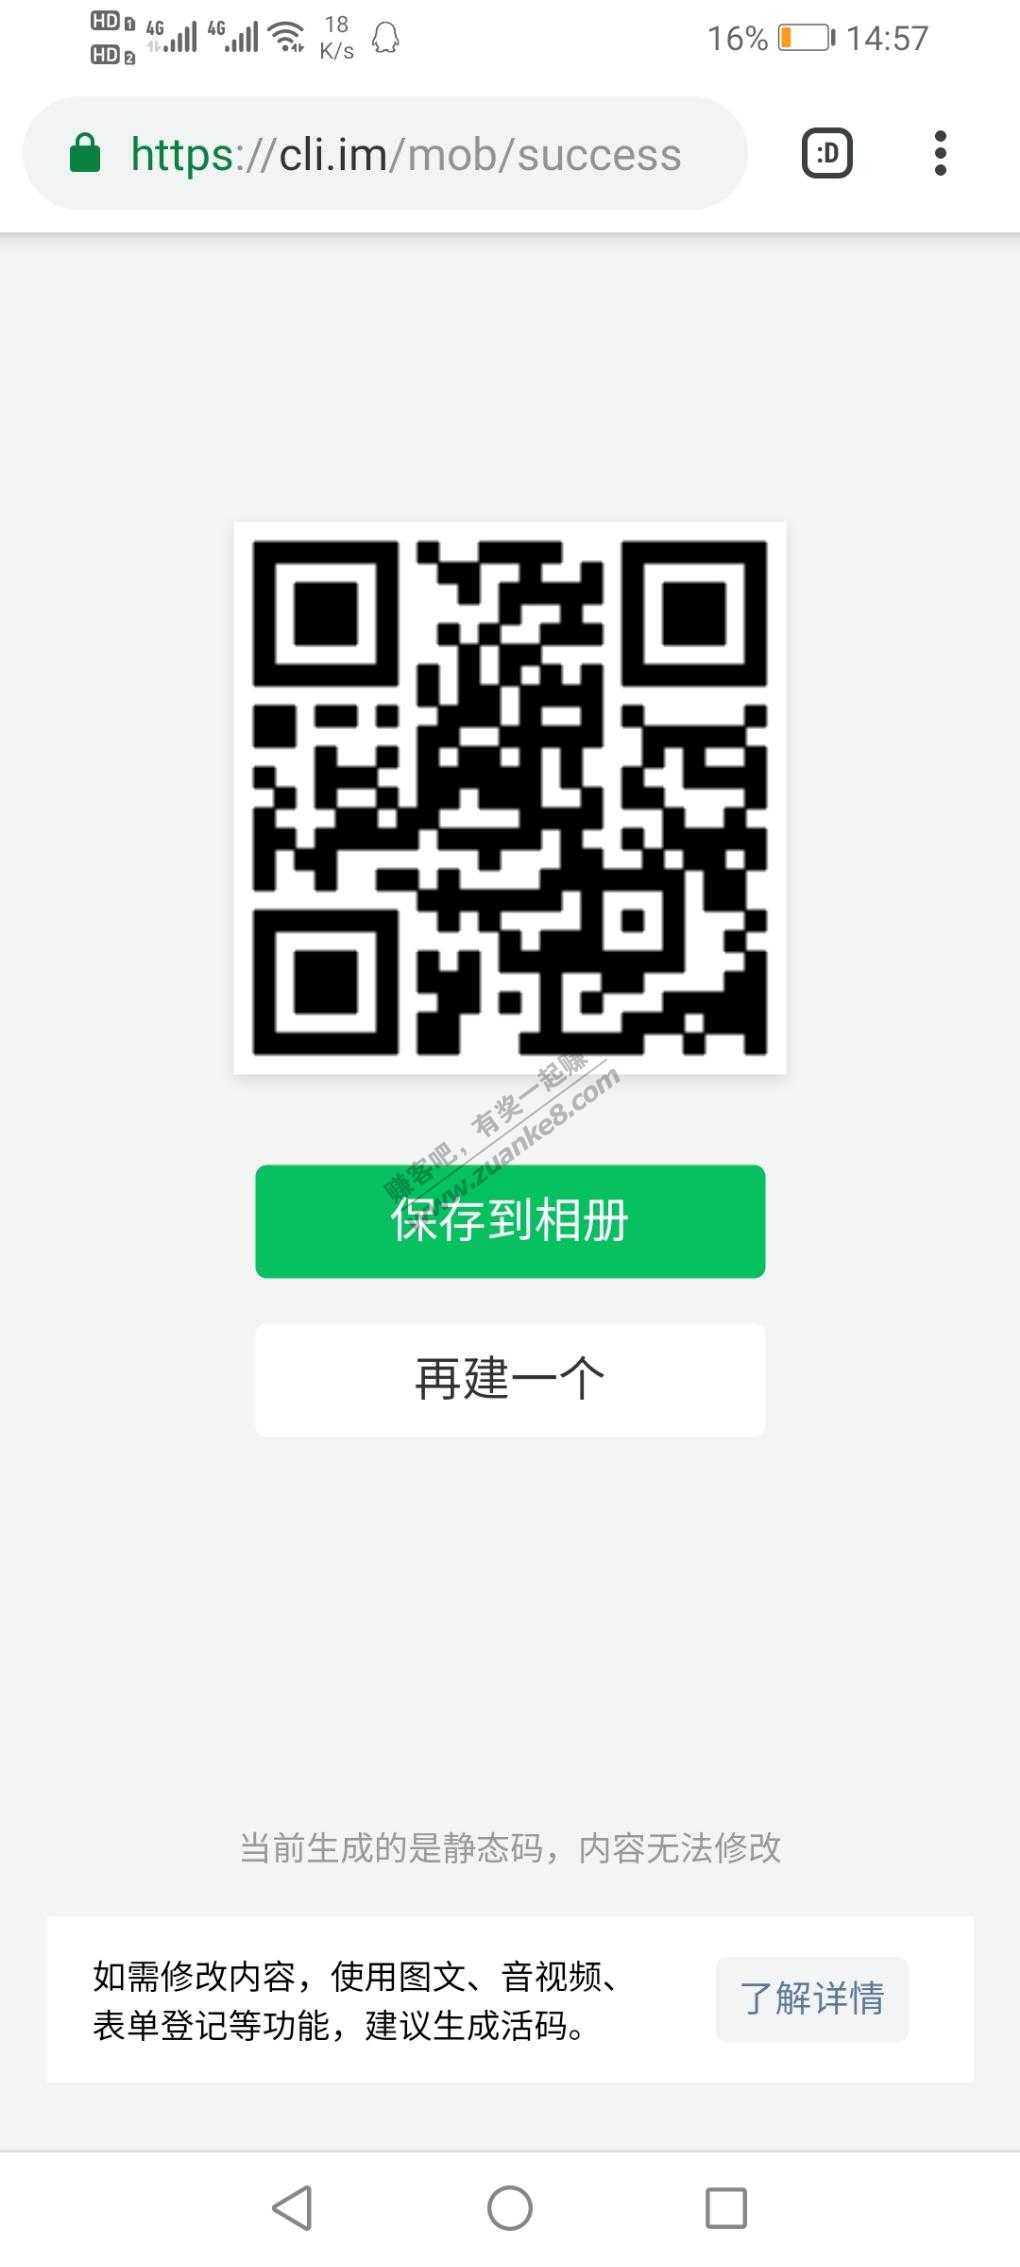 招商实物-55岁以上金卡必中-惠小助(52huixz.com)